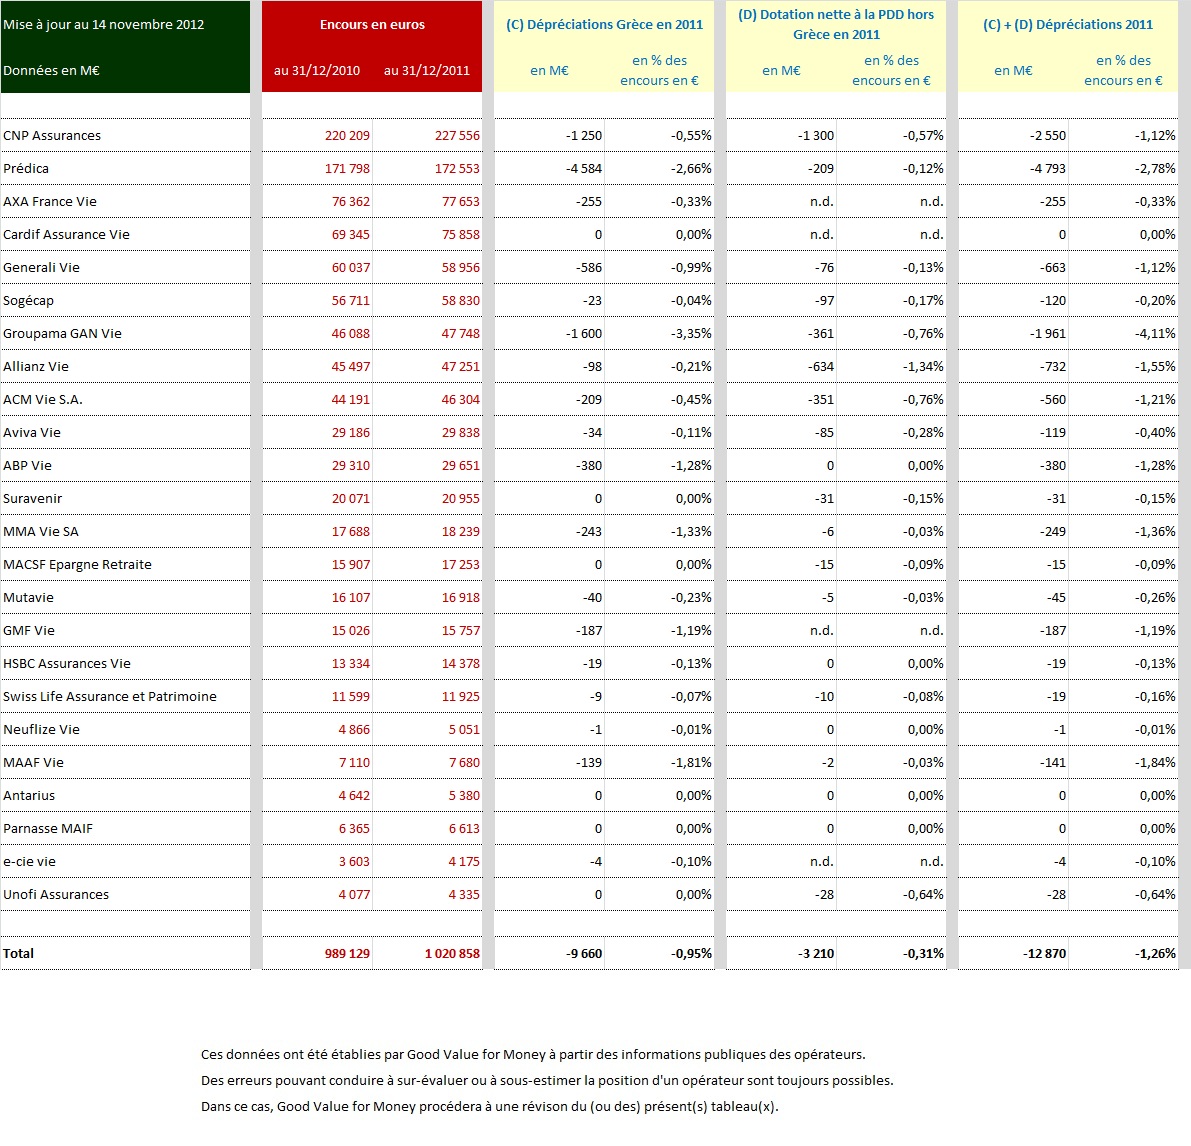 Dépréciations enregistrées dans les comptes d'une vingtaine de sociétés fin 2011